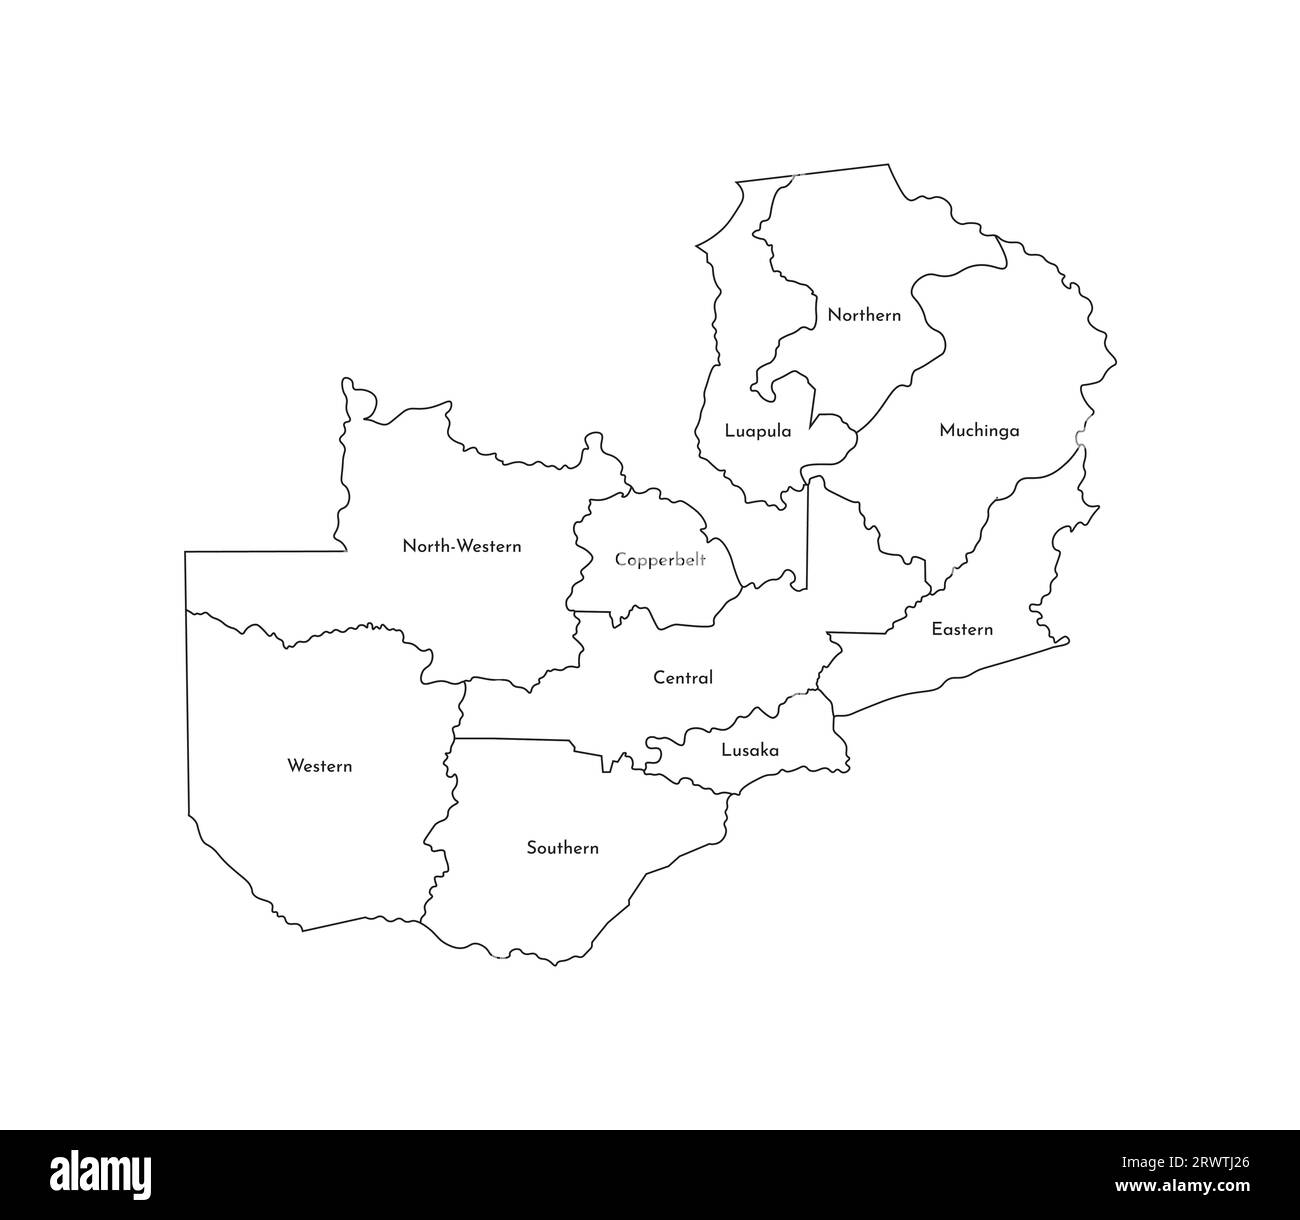 Vektor-isolierte Illustration einer vereinfachten Verwaltungskarte Sambias. Grenzen und Namen der Provinzen (Regionen). Silhouetten mit schwarzen Linien. Stock Vektor